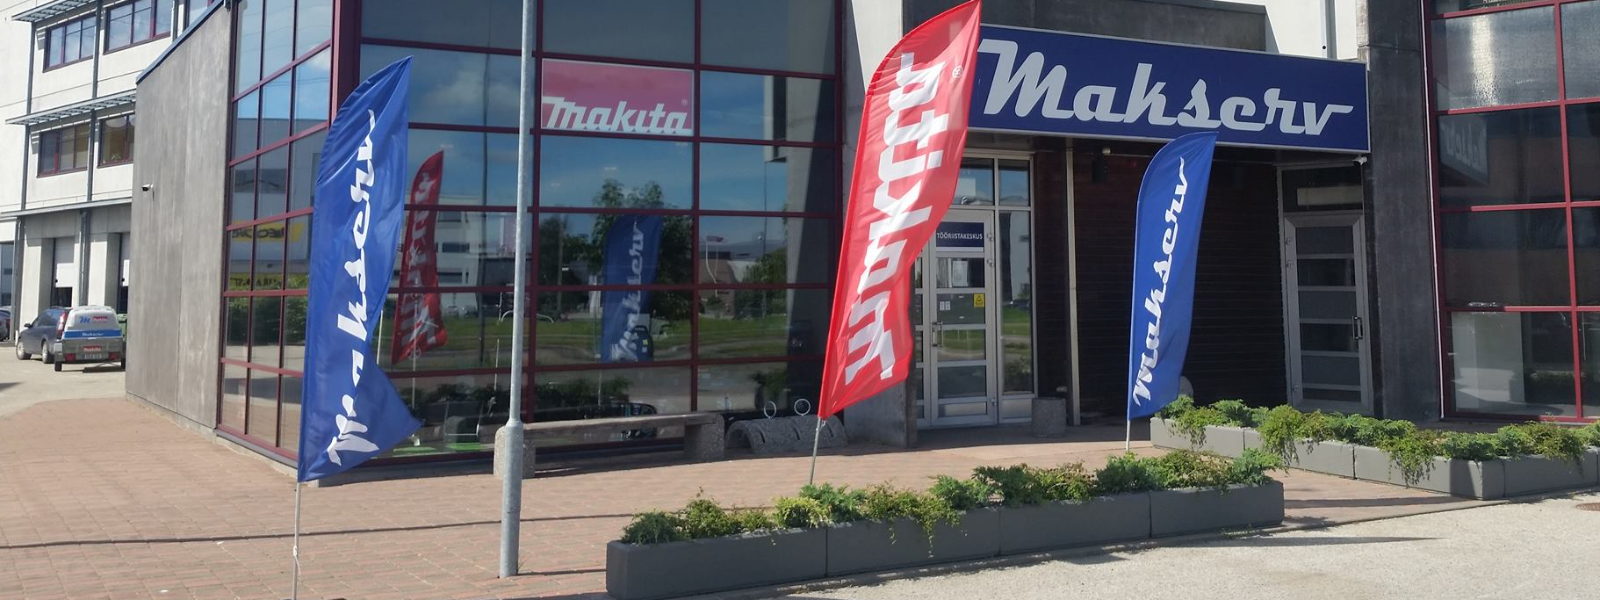 MAKSERV OÜ - Meie põhitegevuseks on Makita tööriistade rent, müük, hooldus ja remont. Esindused asuvad Tallinnas ja ...